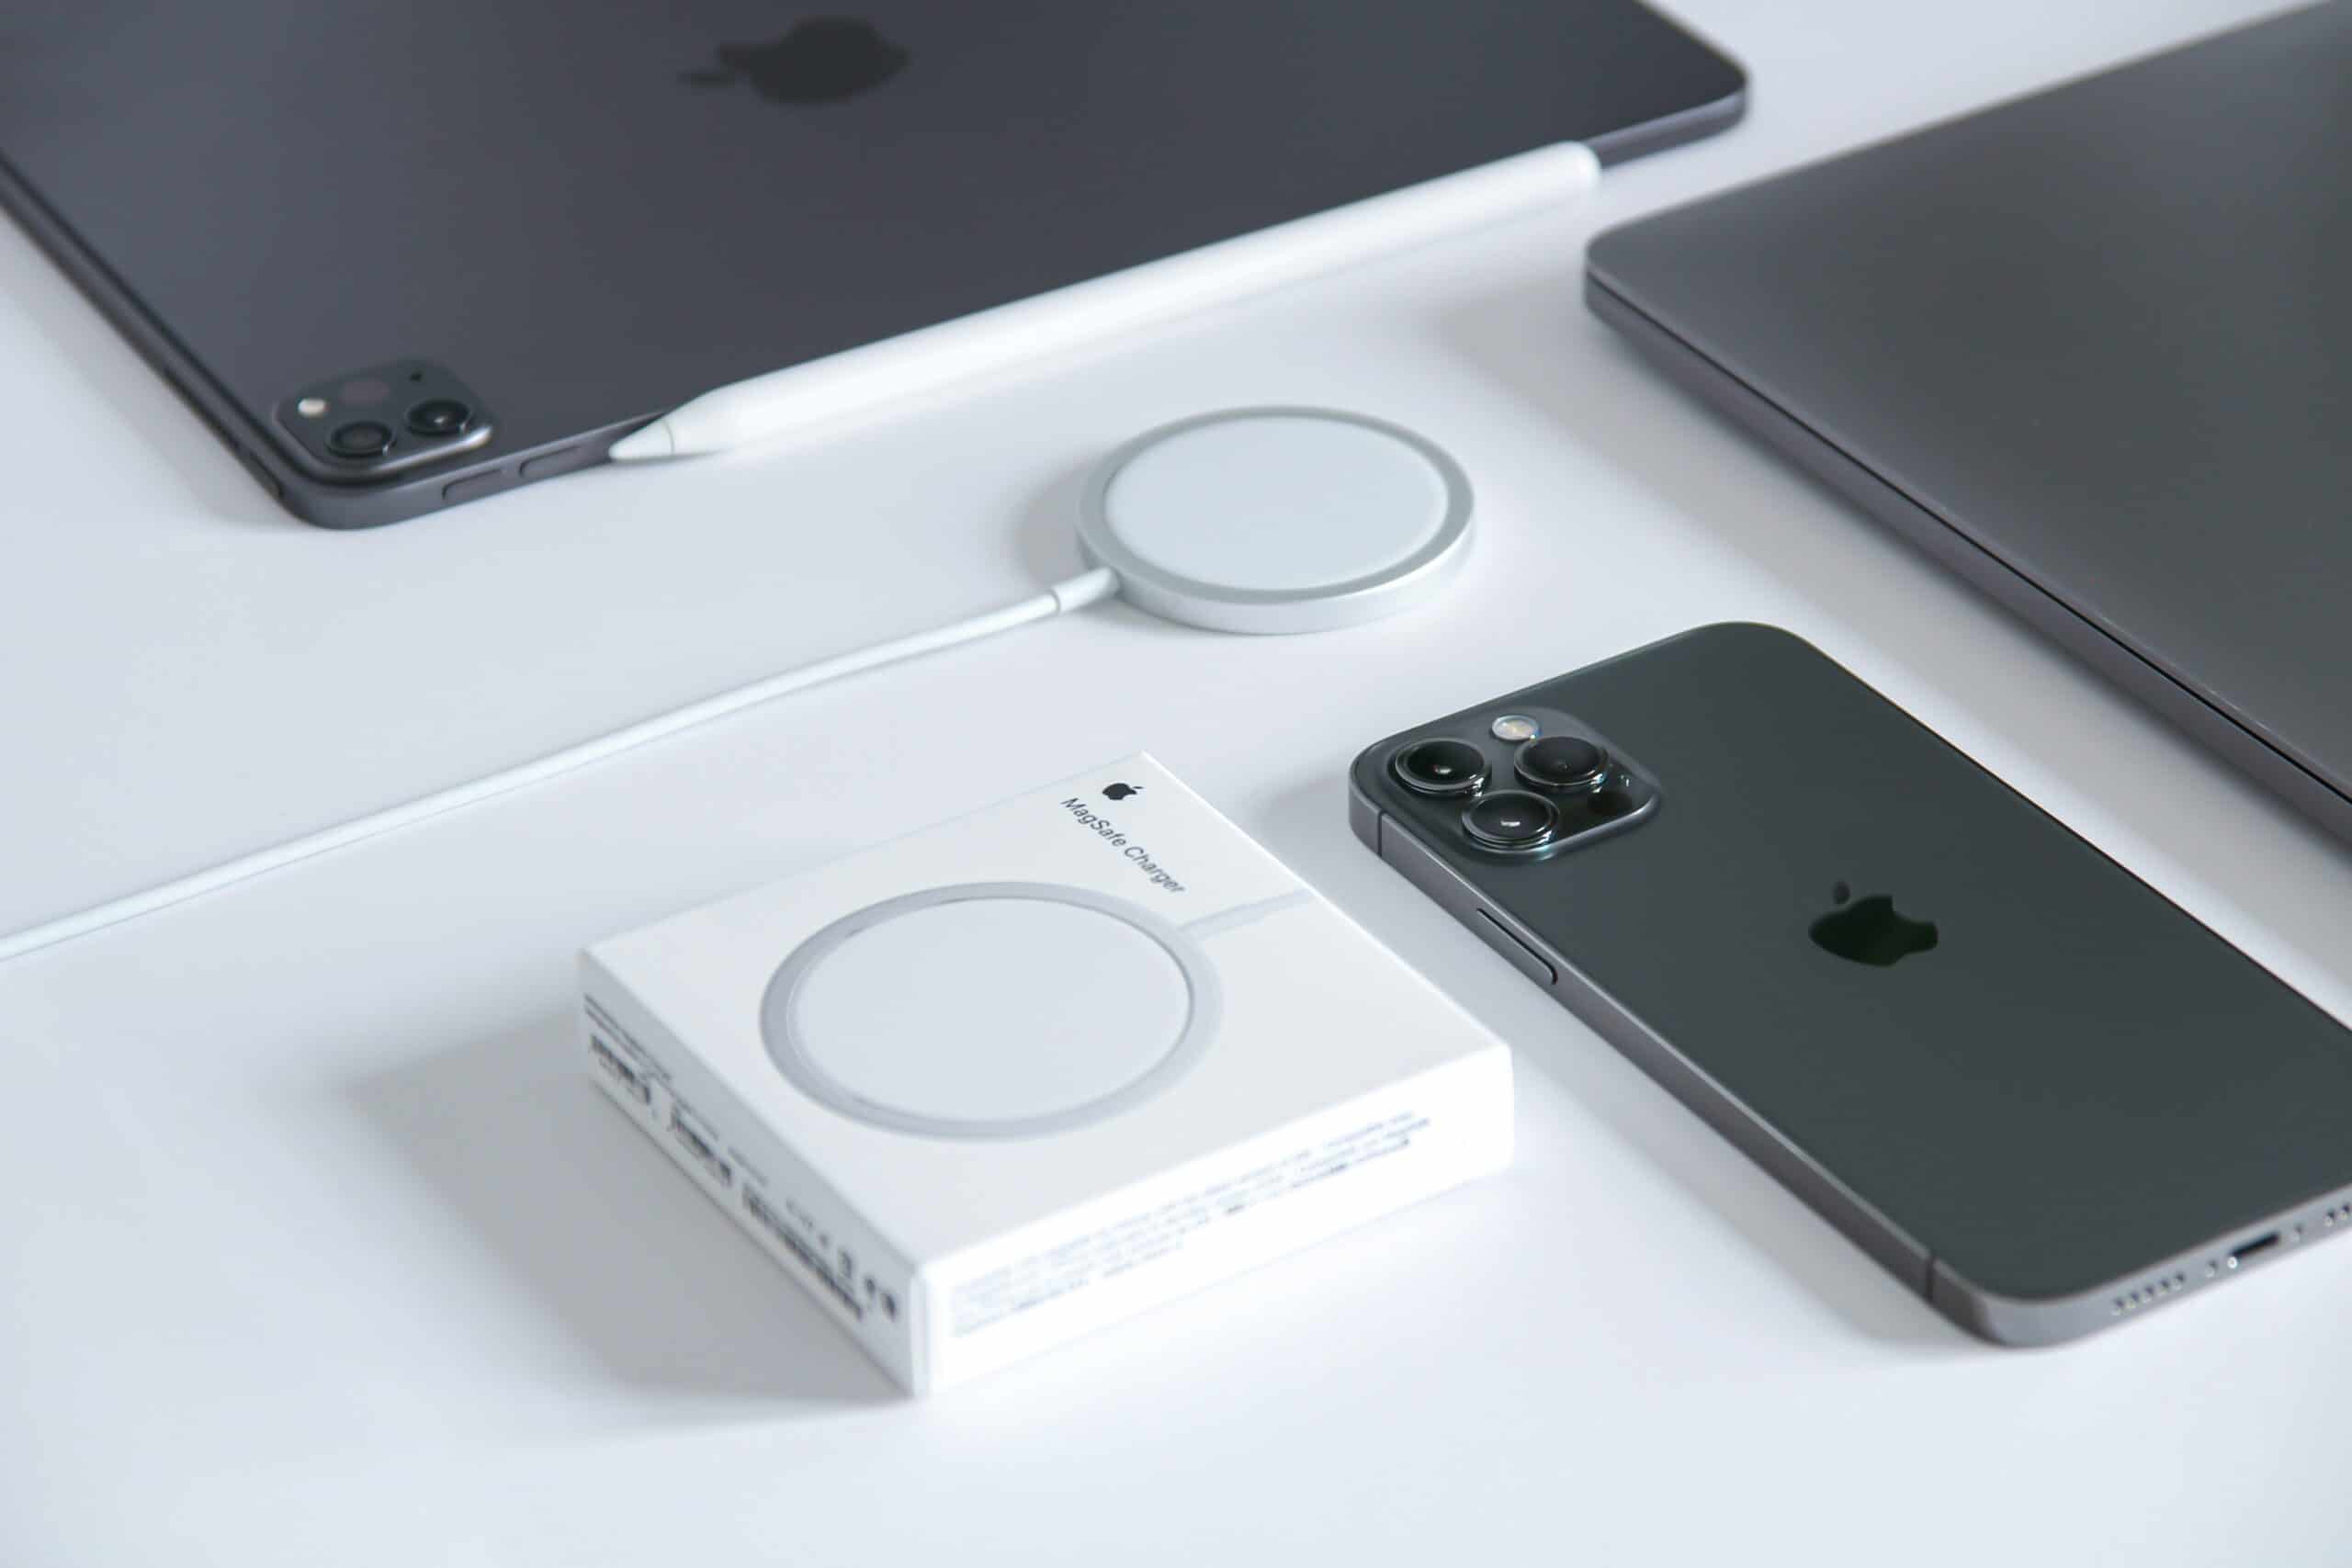 【レビュー】Apple純正MagSafe充電器は唯一の欠点を除けば最高